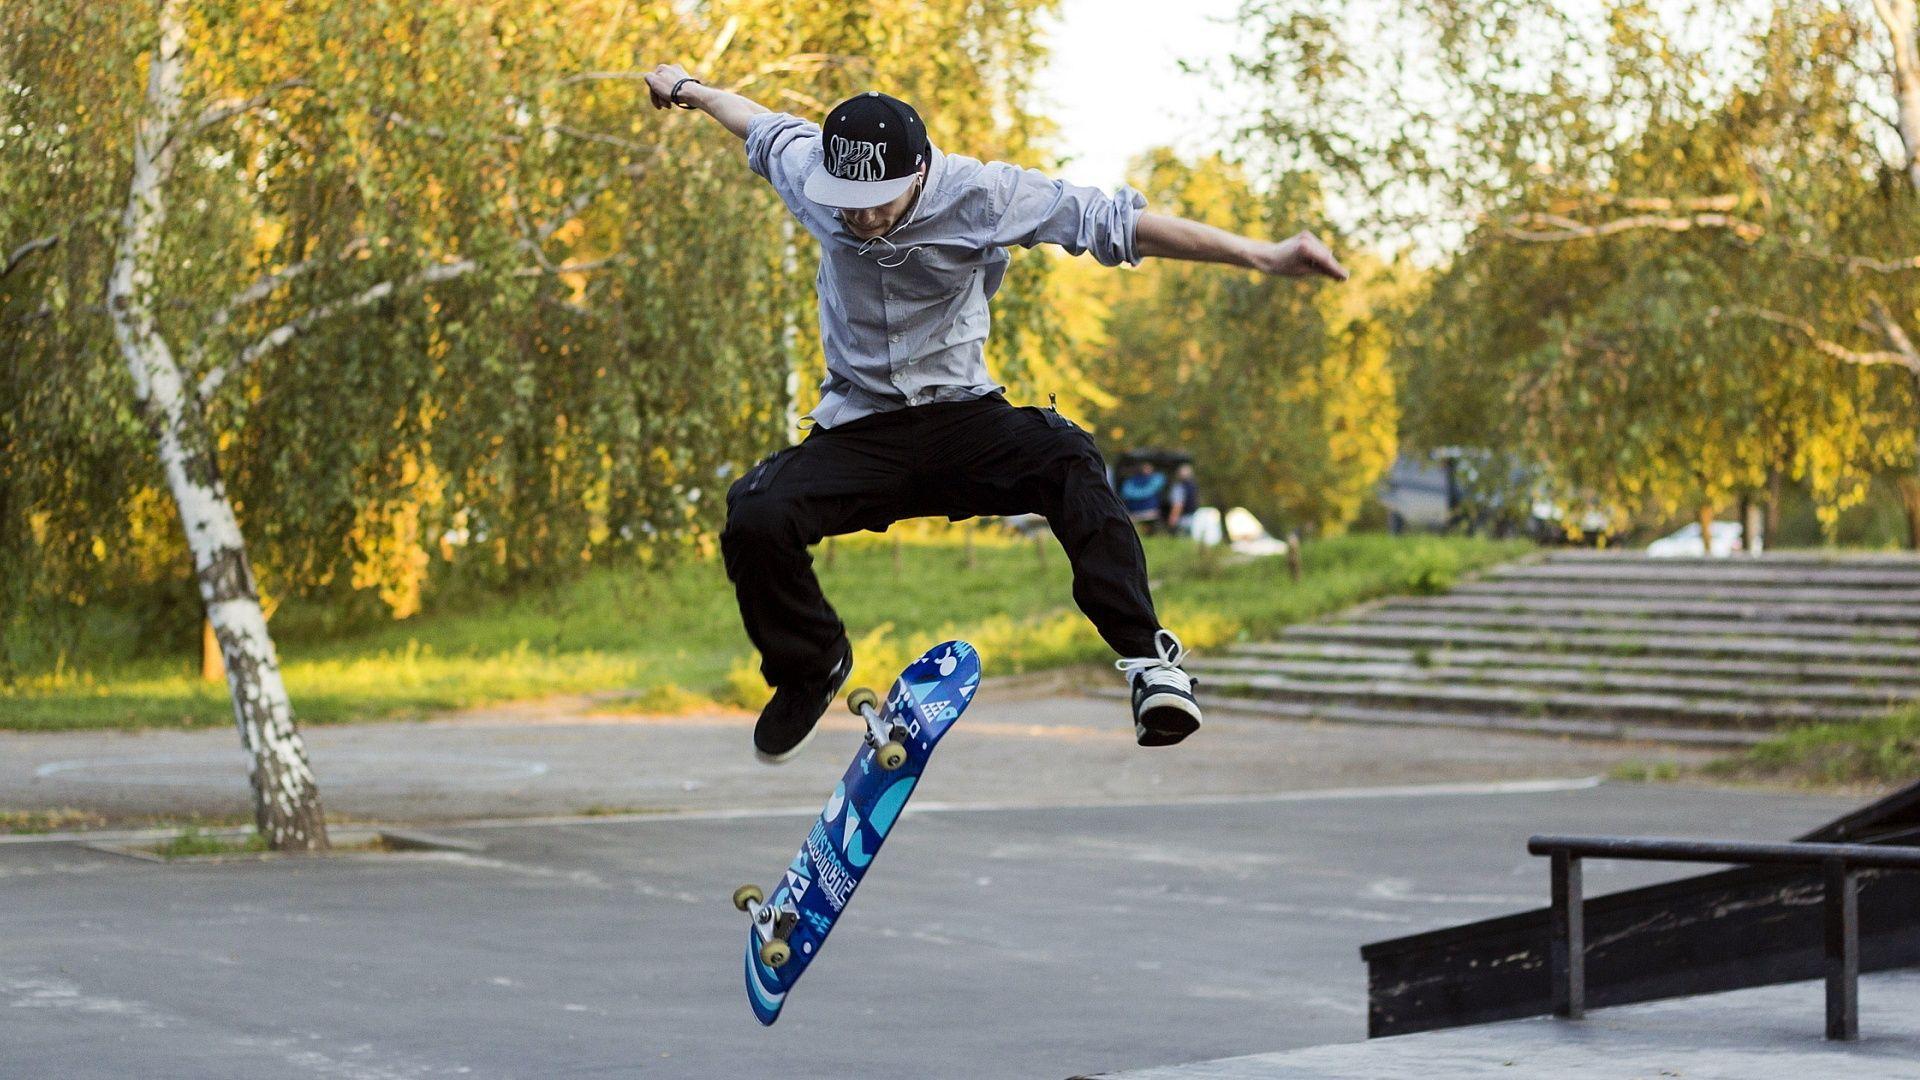 Skateboarding Wallpaper, Best Skateboarding Wallpaper, Wide Full